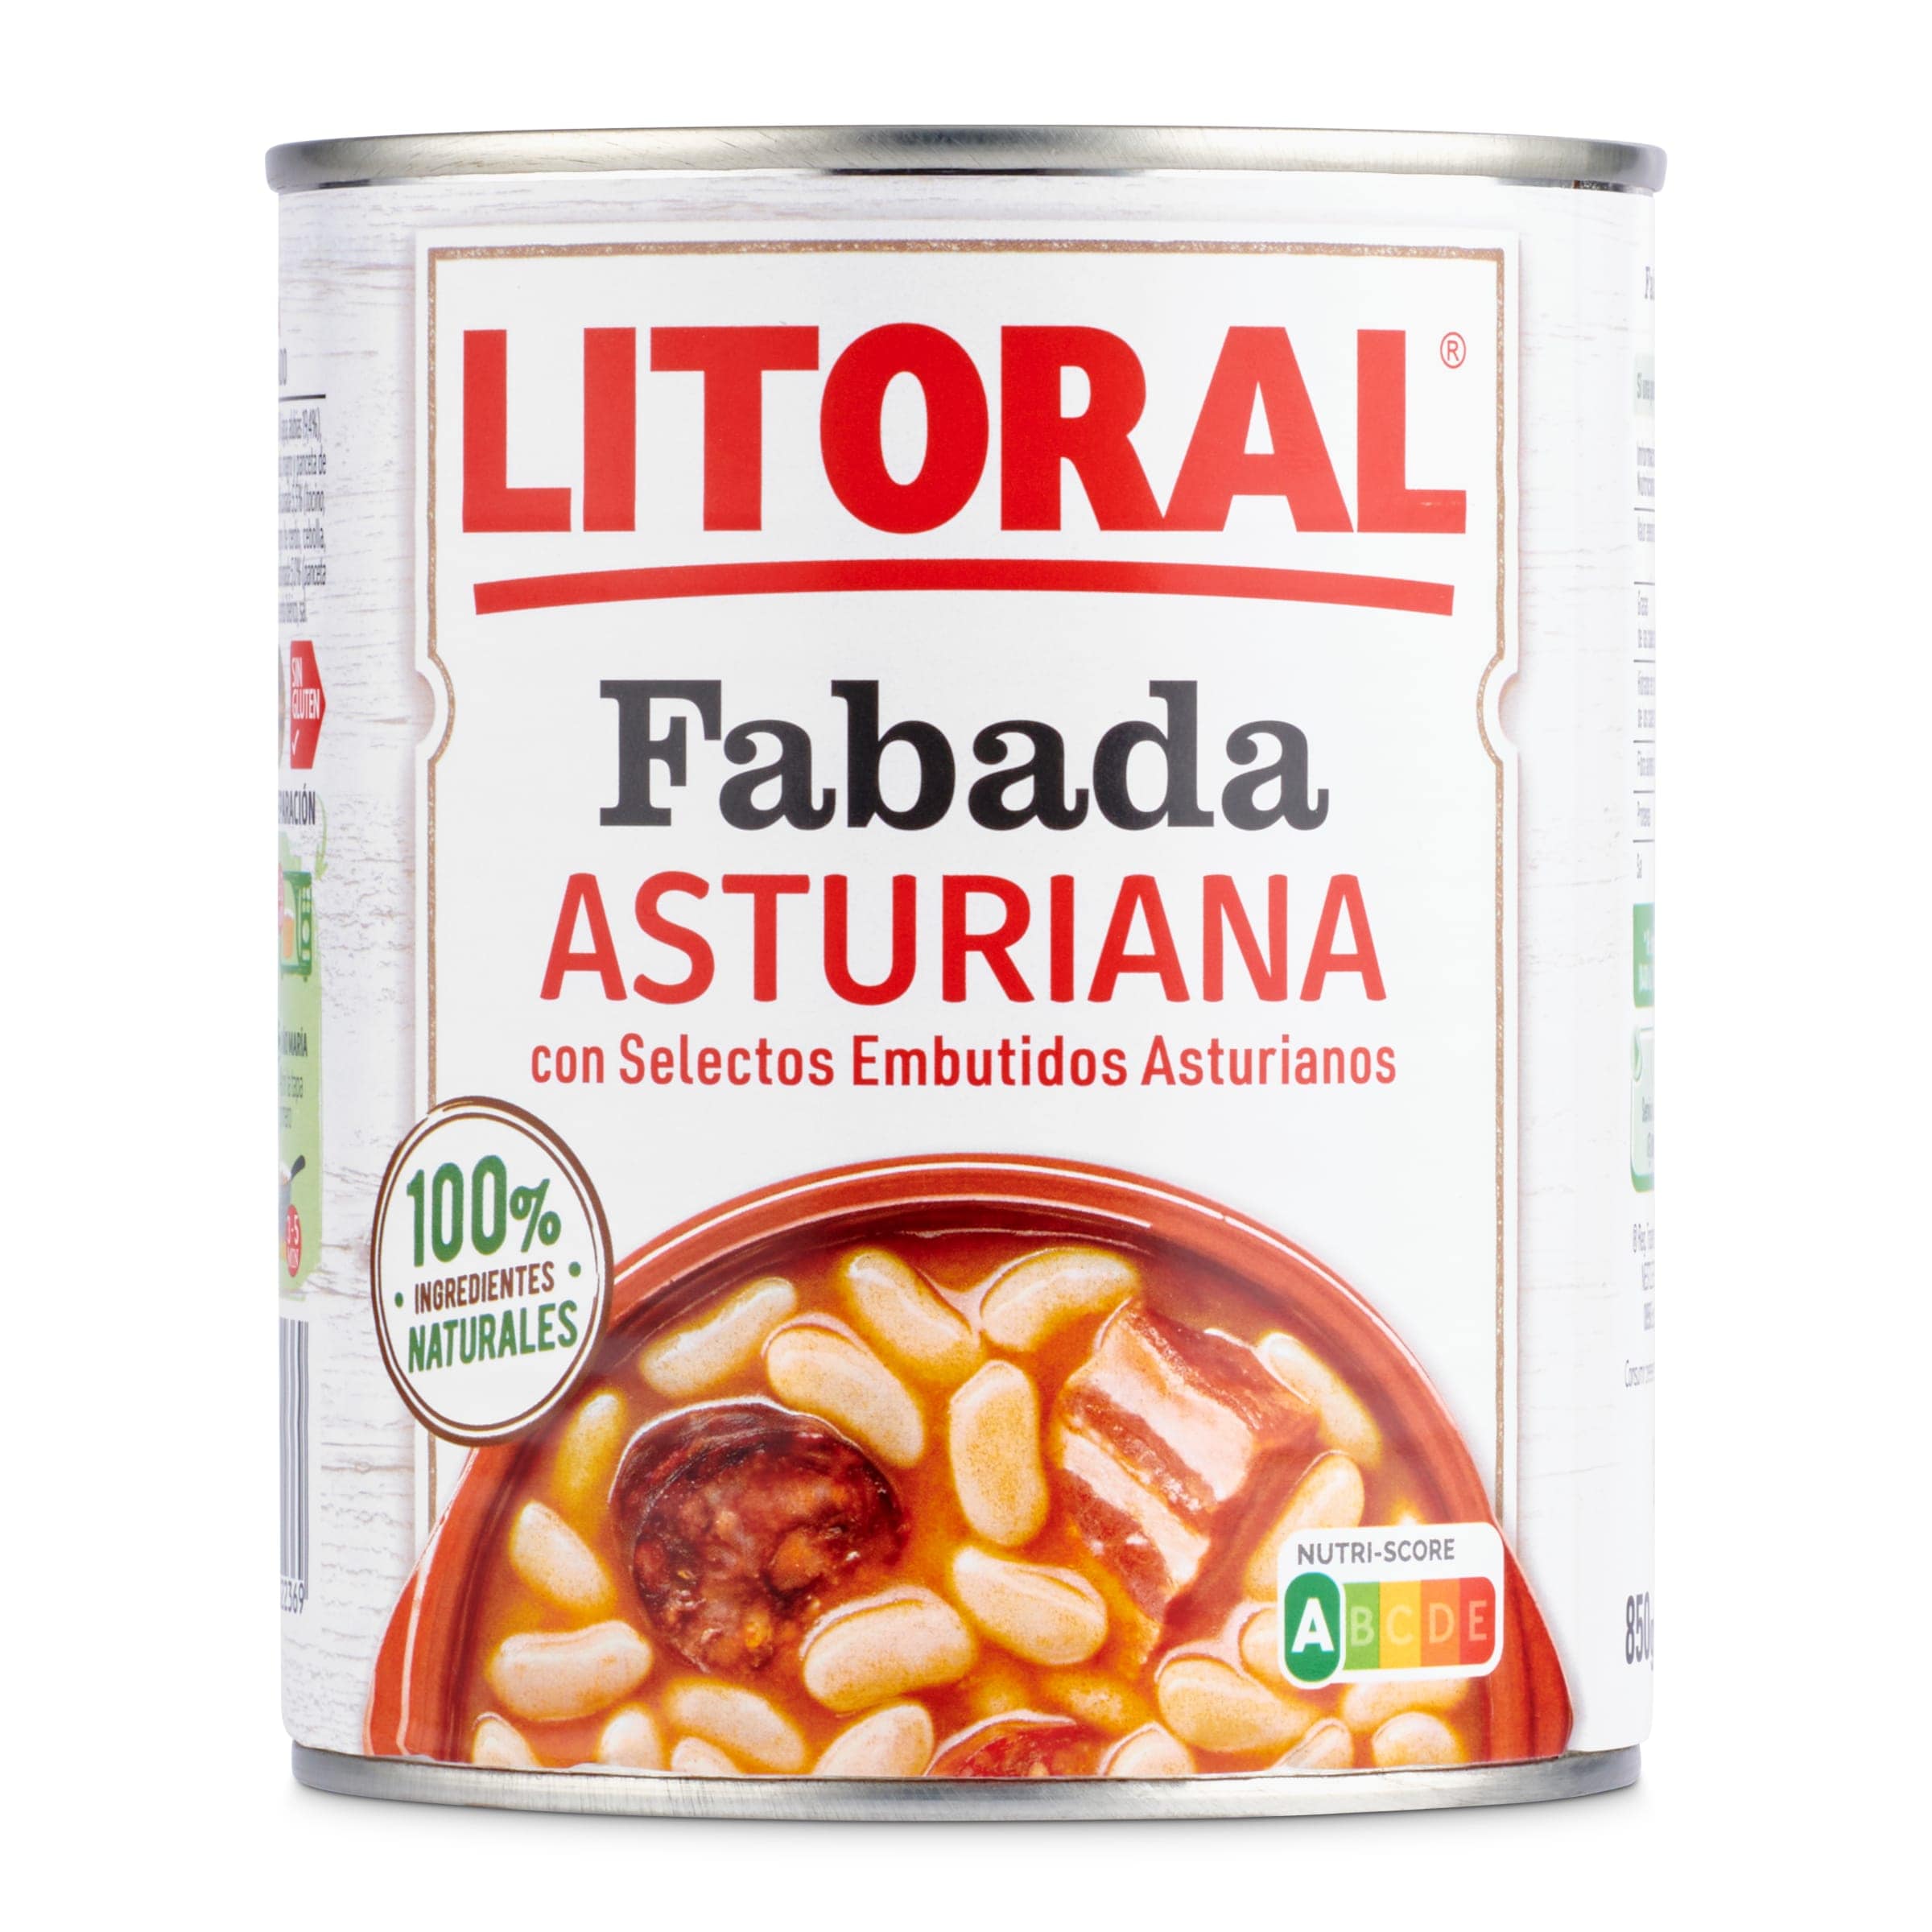 Fabada asturiana Litoral lata 850 g - Supermercados DIA